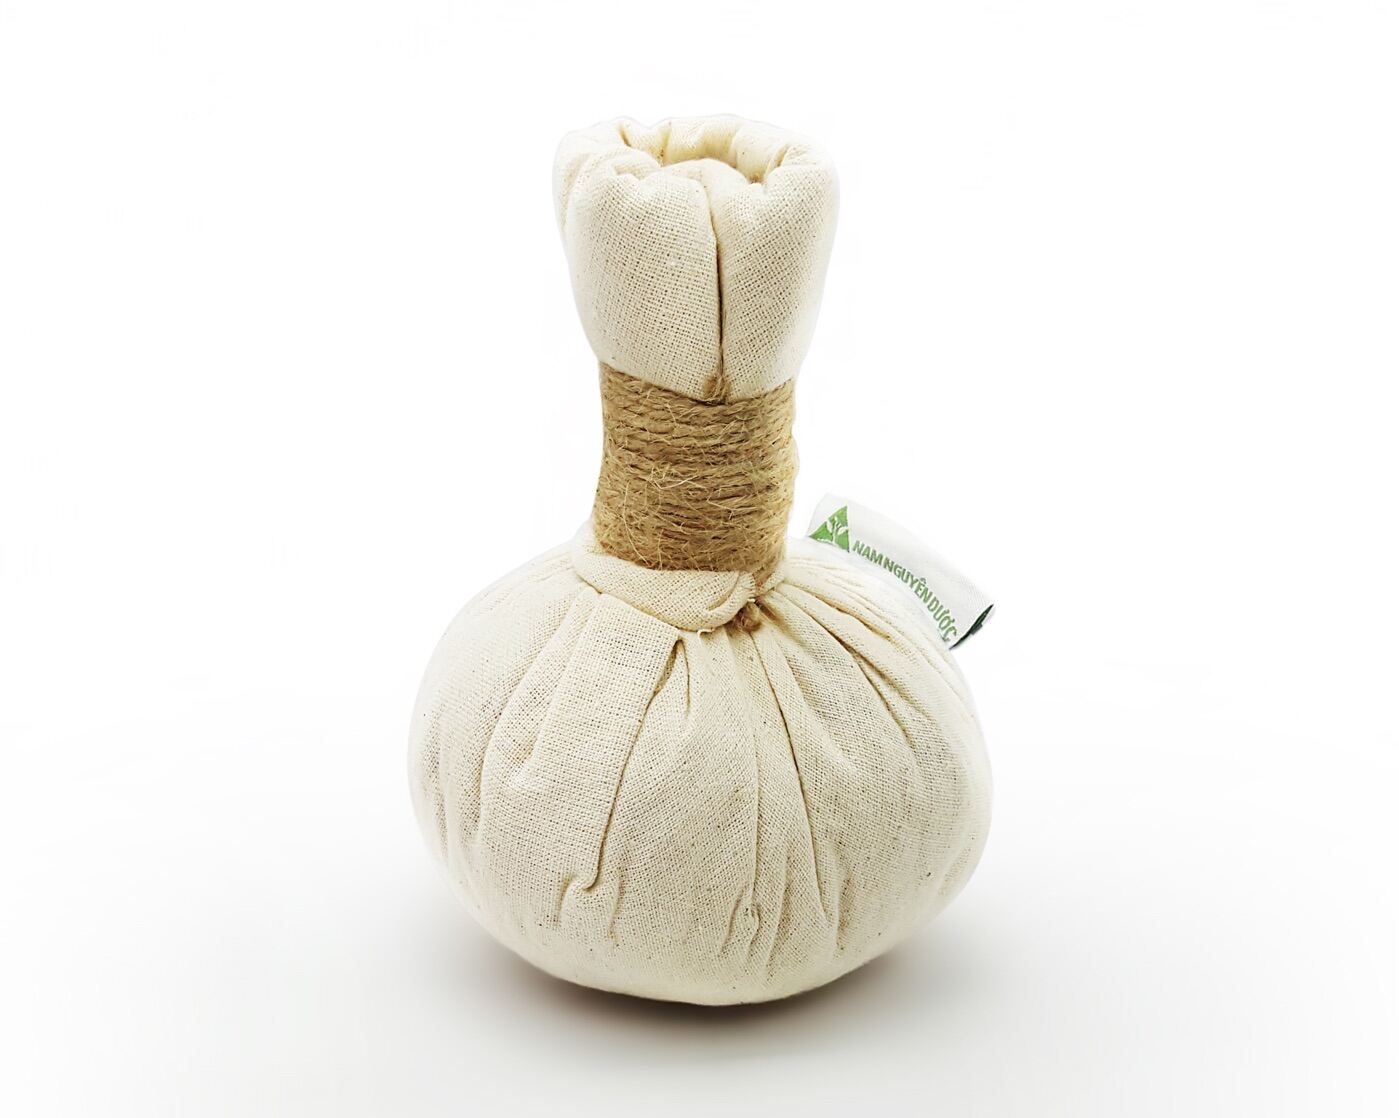 Túi chườm (banh chườm, banh massage) thảo dược làm nóng bằng lò viba